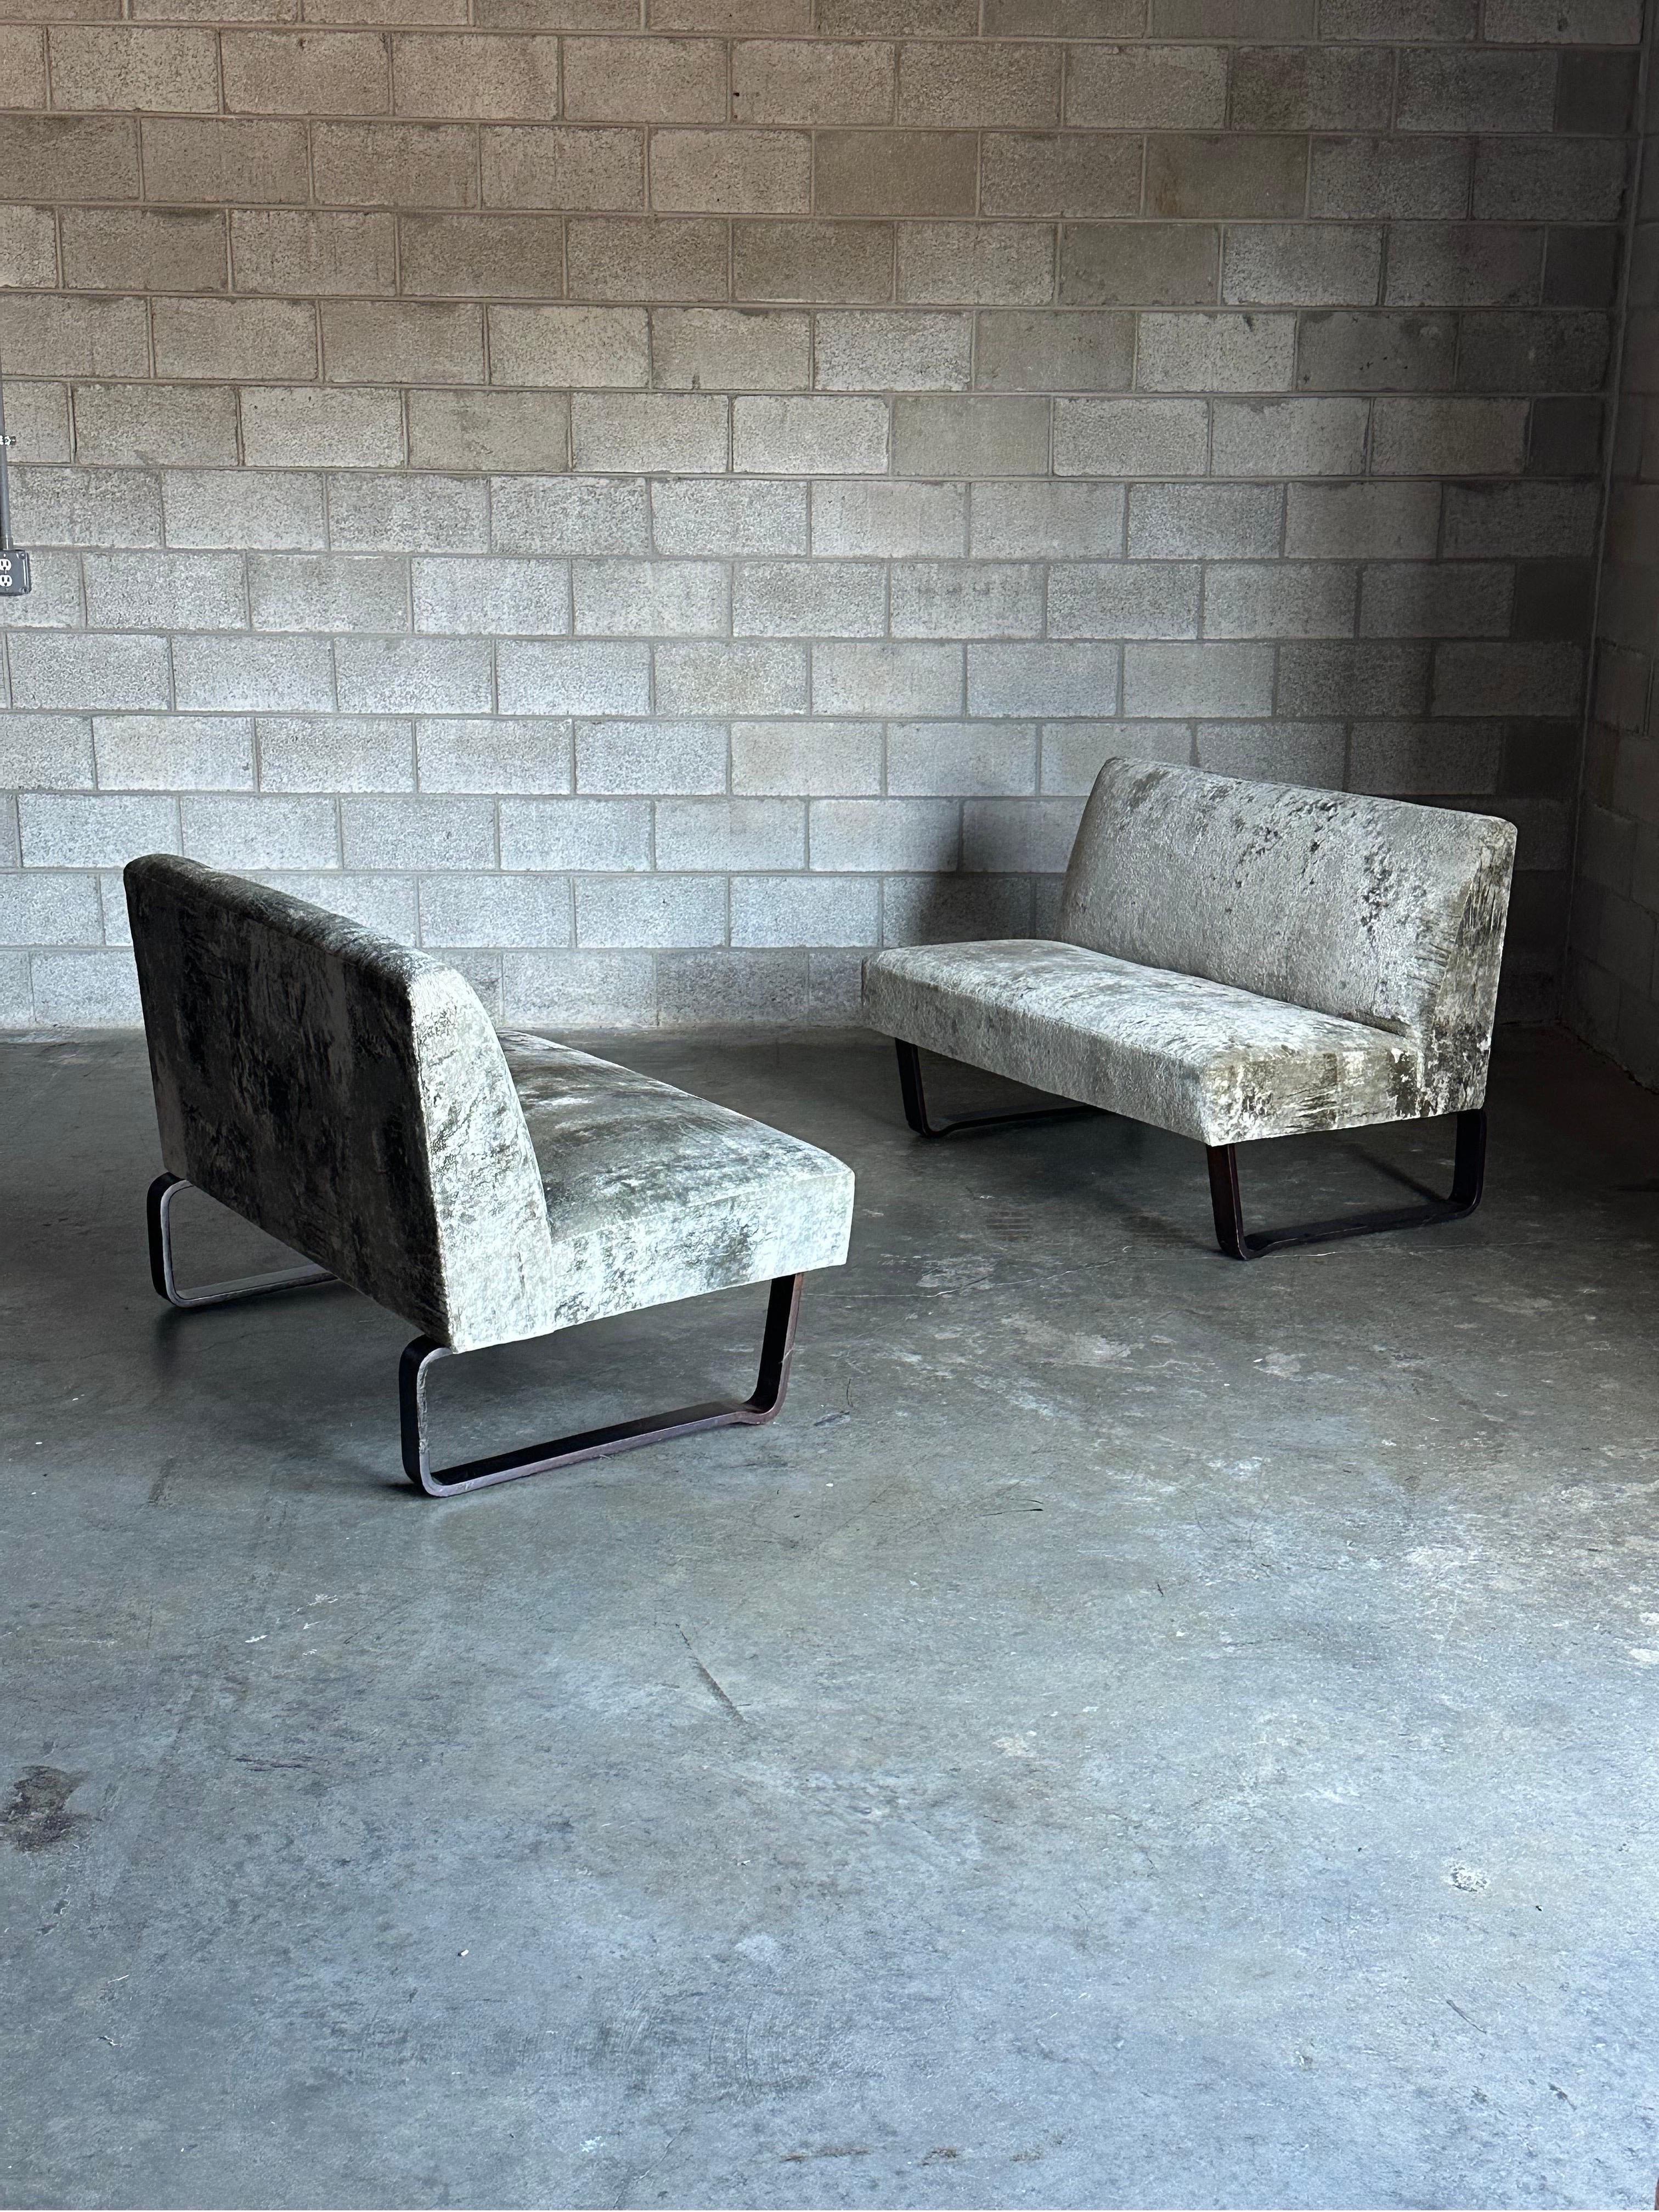 Seltenes Sofapaar, entworfen von Edward Wormley für Dunbar Furniture. Die Sofas haben ein armloses Profil mit zwei schlittenartigen Beinen aus Mahagoni. Gelegentlich werden sie als Sofas angeboten, aber ein zusammengehöriges Paar Sofas ist eher